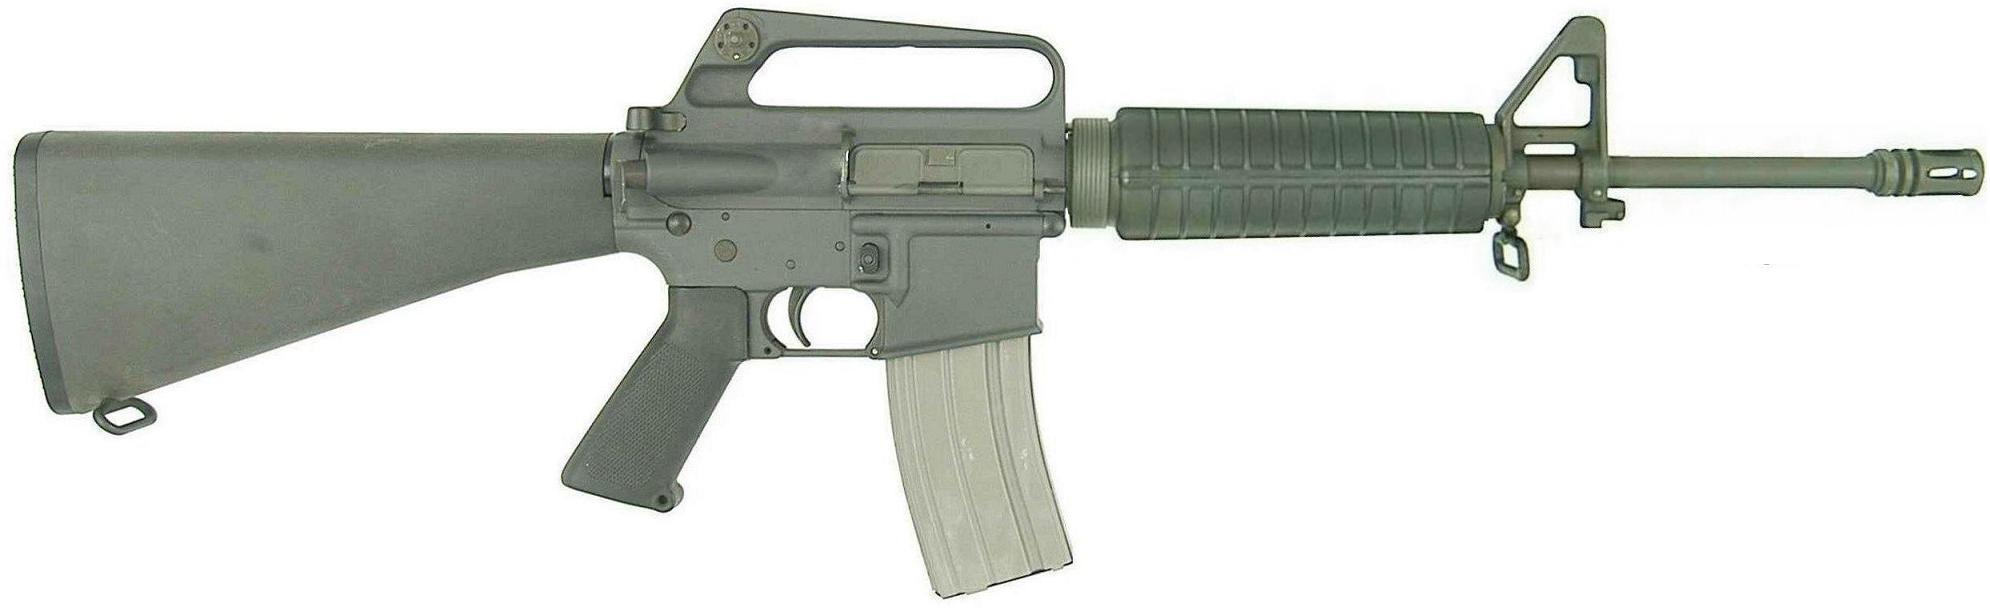 Американская винтовка м16